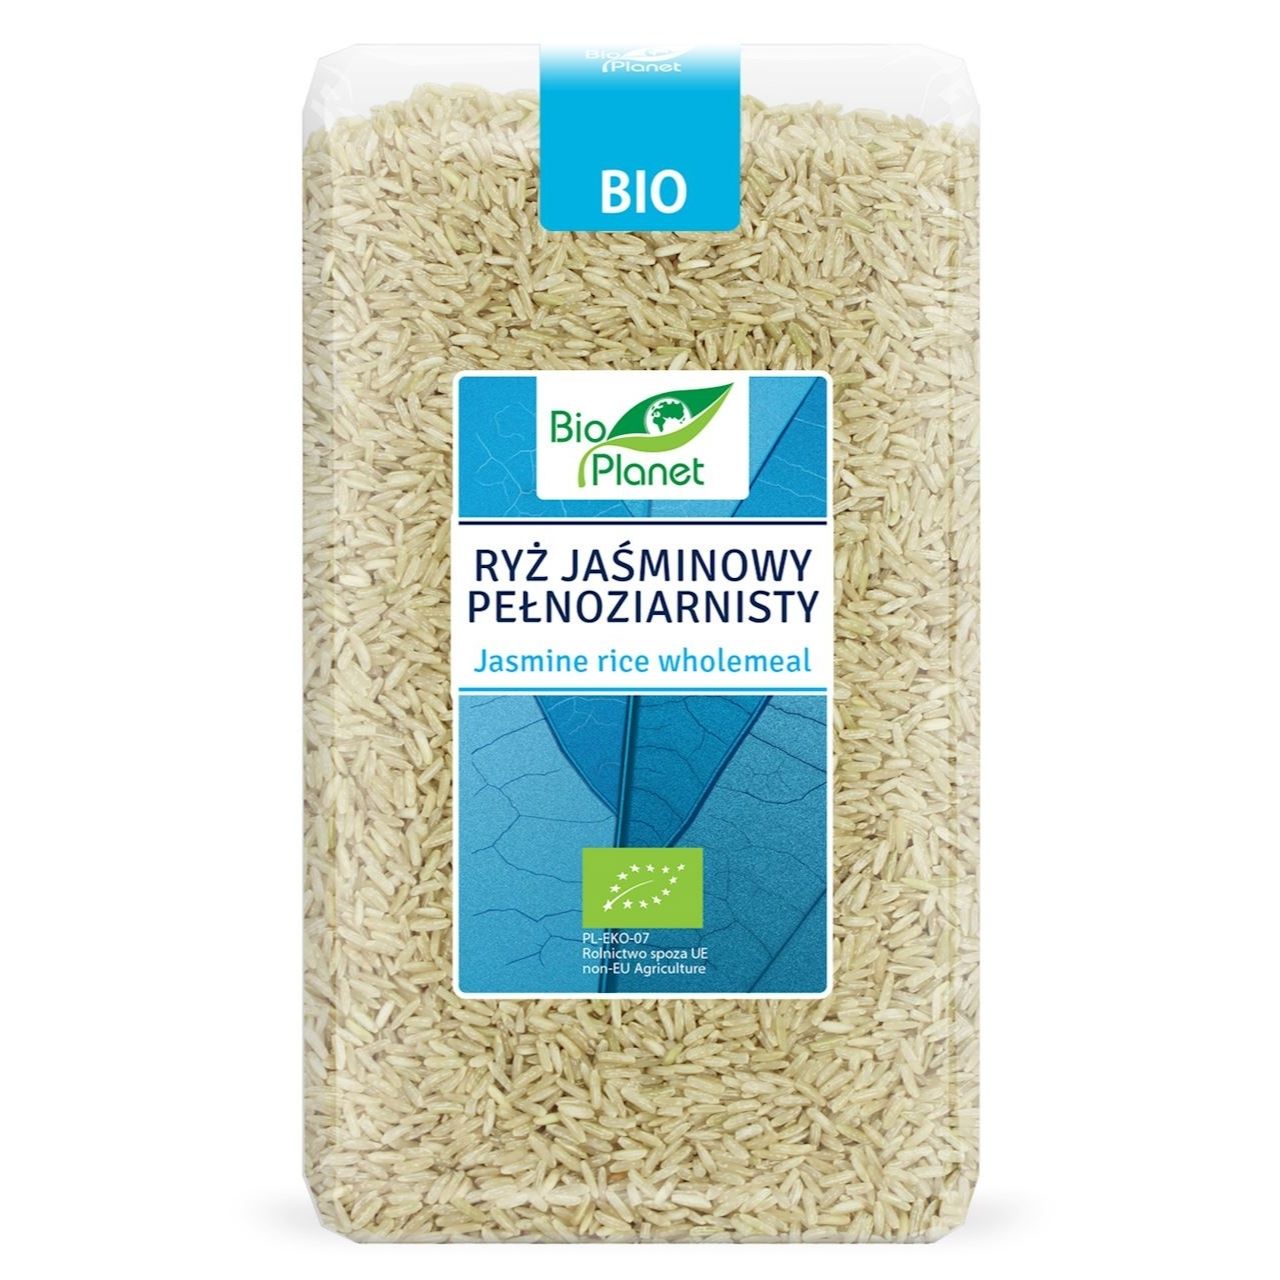 Ryż jaśminowy pełnoziarnisty BIO 1 kg - Bio Planet